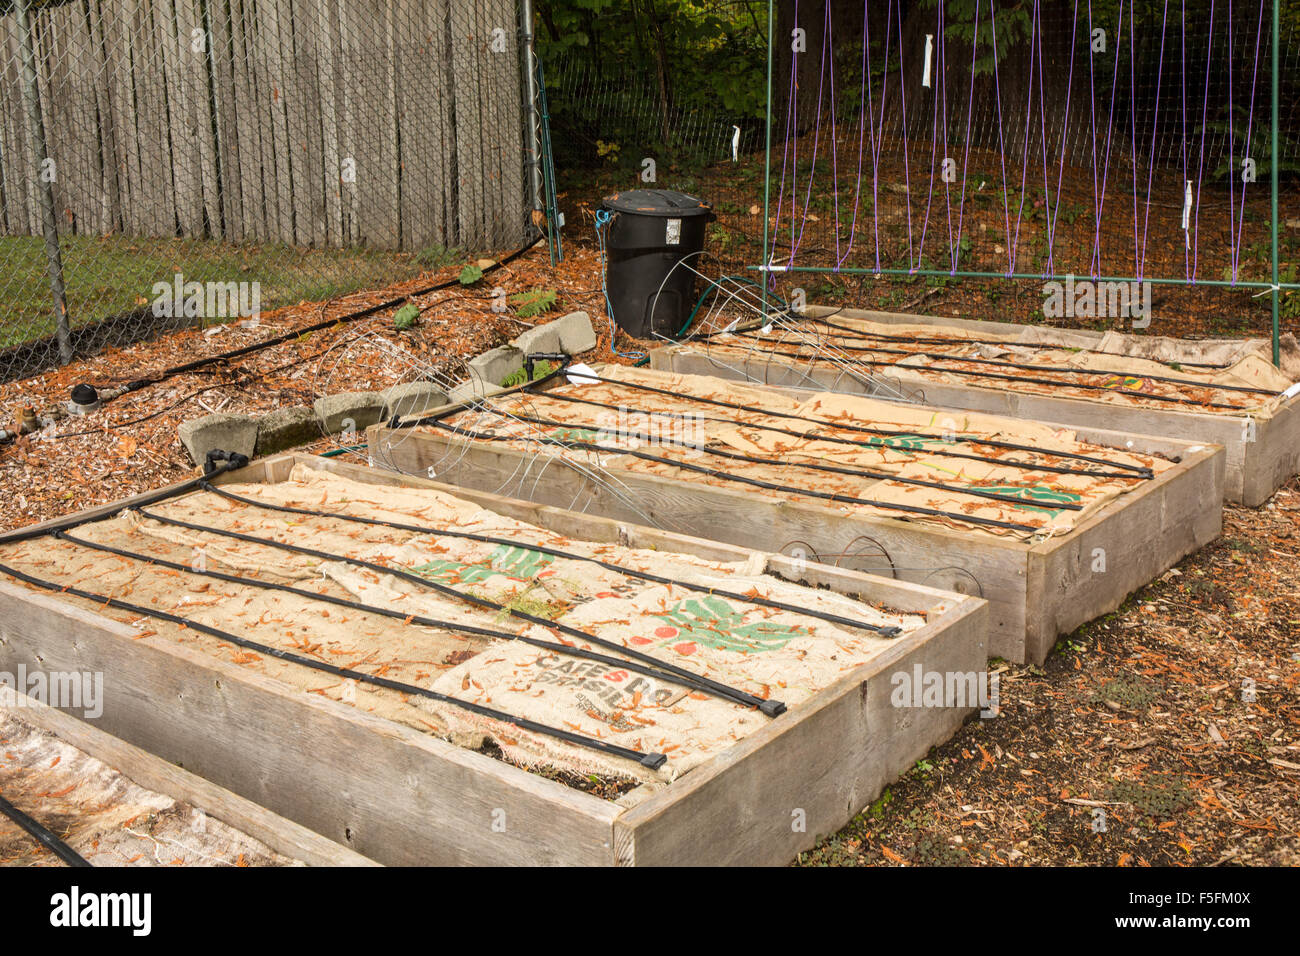 Jardin arboré chambres préparées pour l'hiver en mettant sacs de jute sur le sol pour réduire le lessivage des éléments nutritifs par les pluies d'hiver Banque D'Images